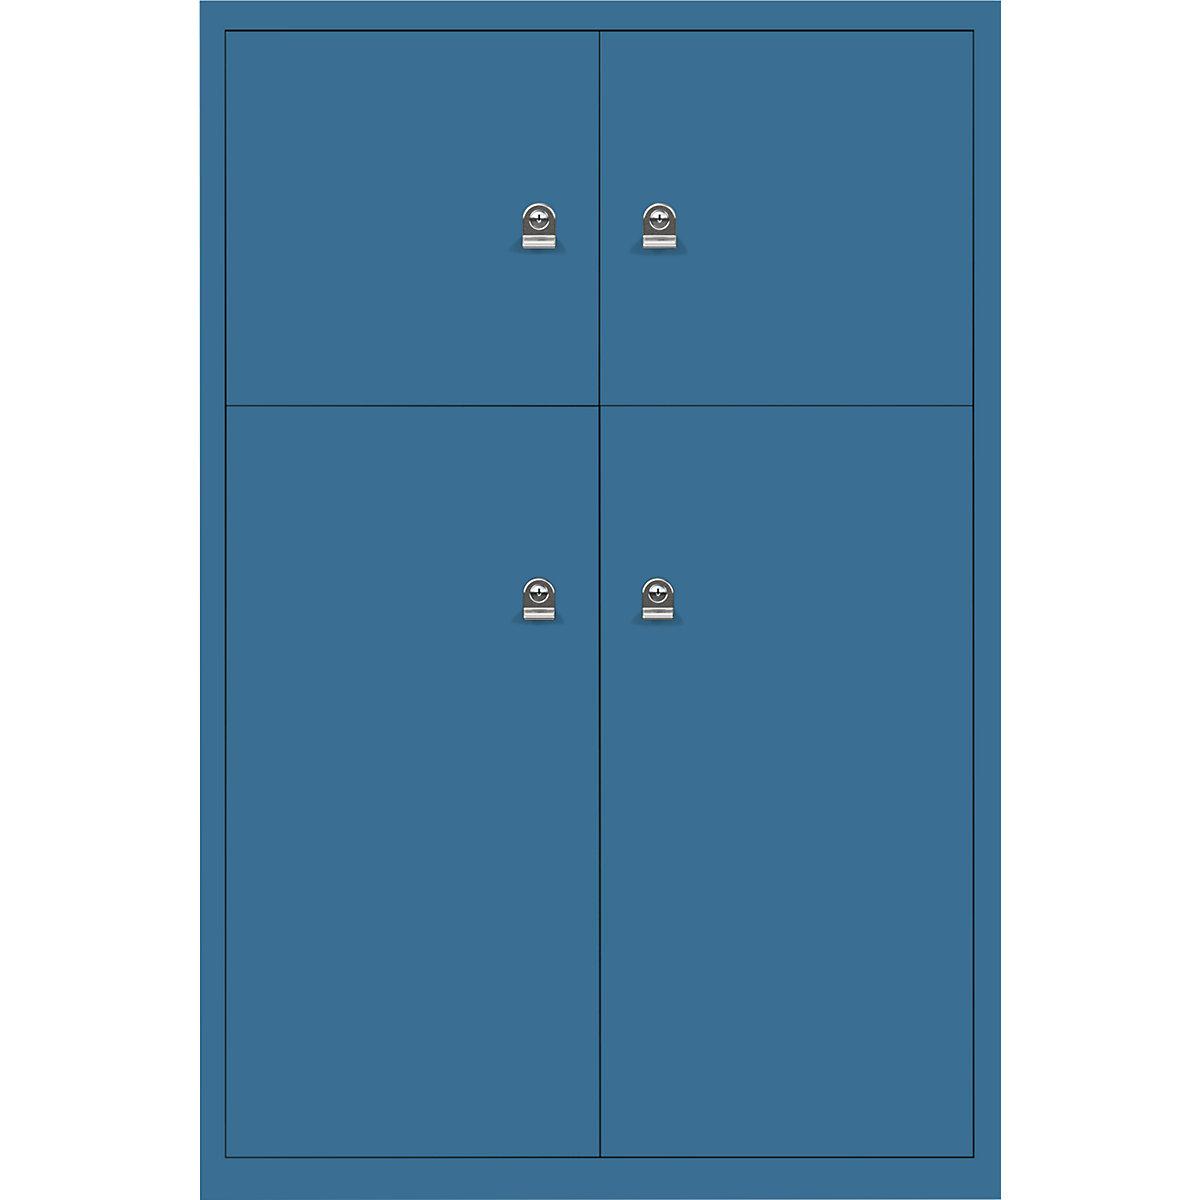 Omara s predelki z zaklepanjem LateralFile™ – BISLEY, 4 predelki z zaklepanjem, višina 2 x 375 mm, 2 x 755 mm, azurno modre barve-19